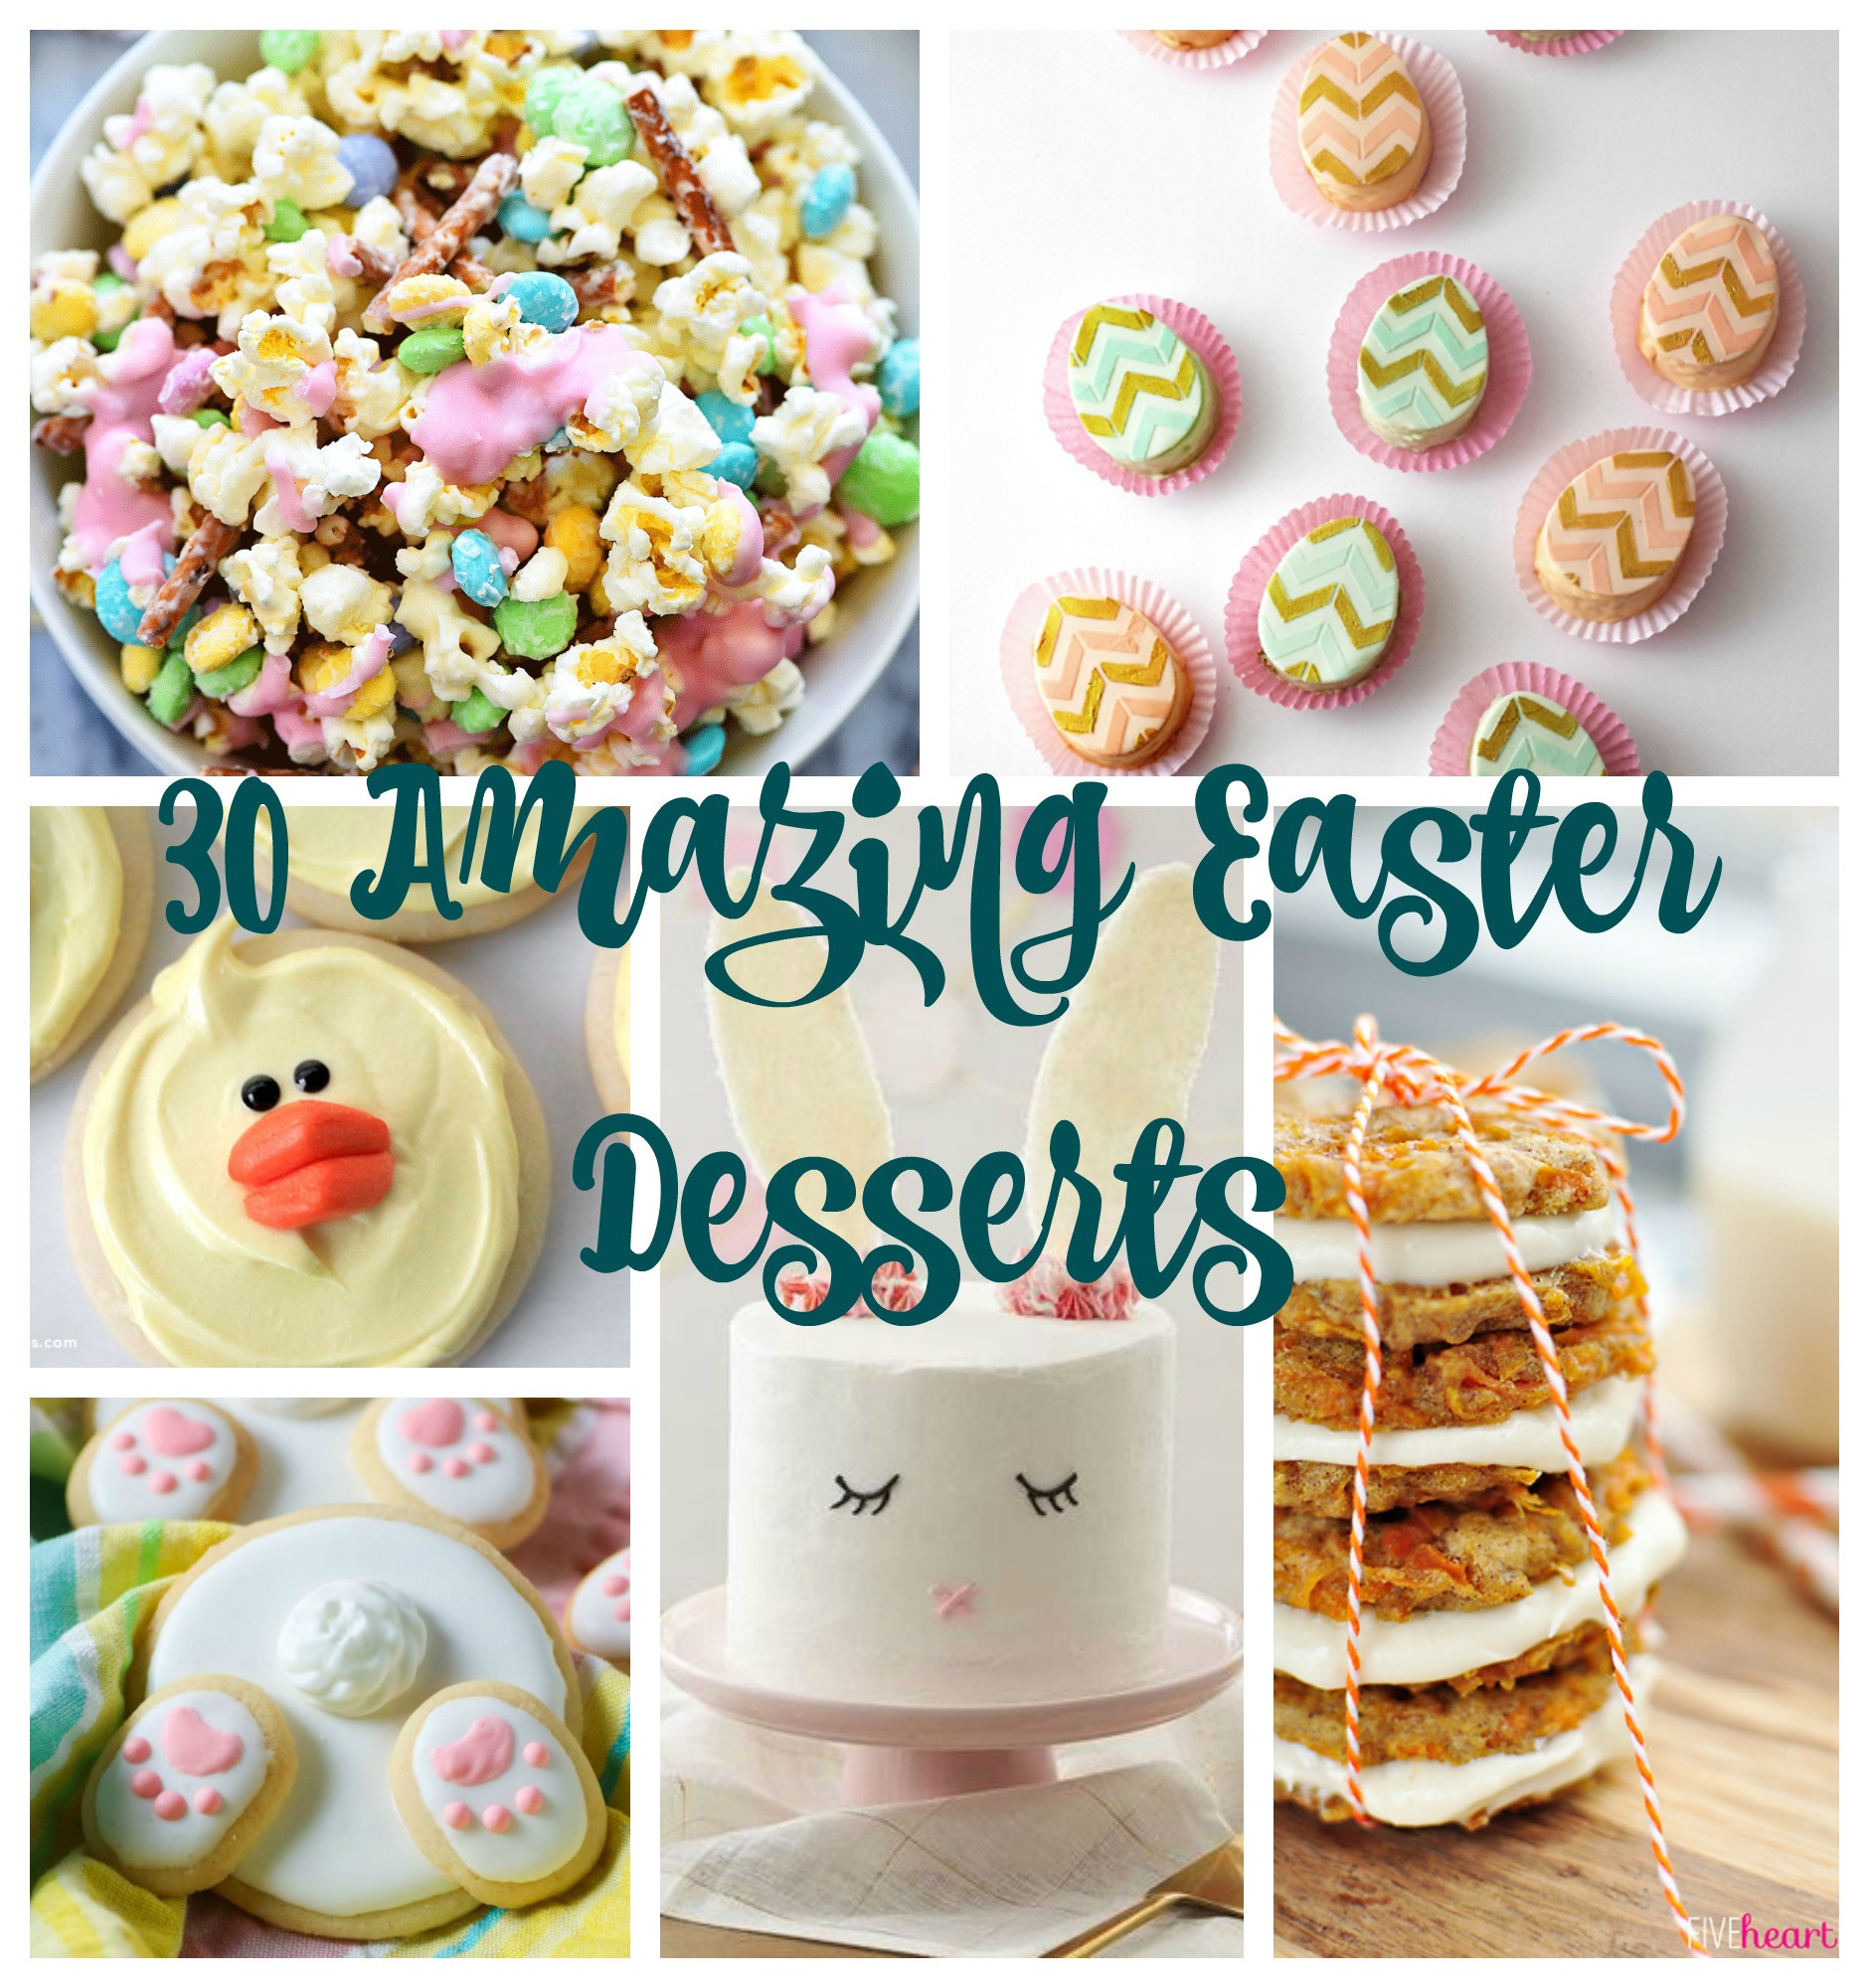 Good Easter Desserts
 30 Amazing Easter Desserts I Dig Pinterest